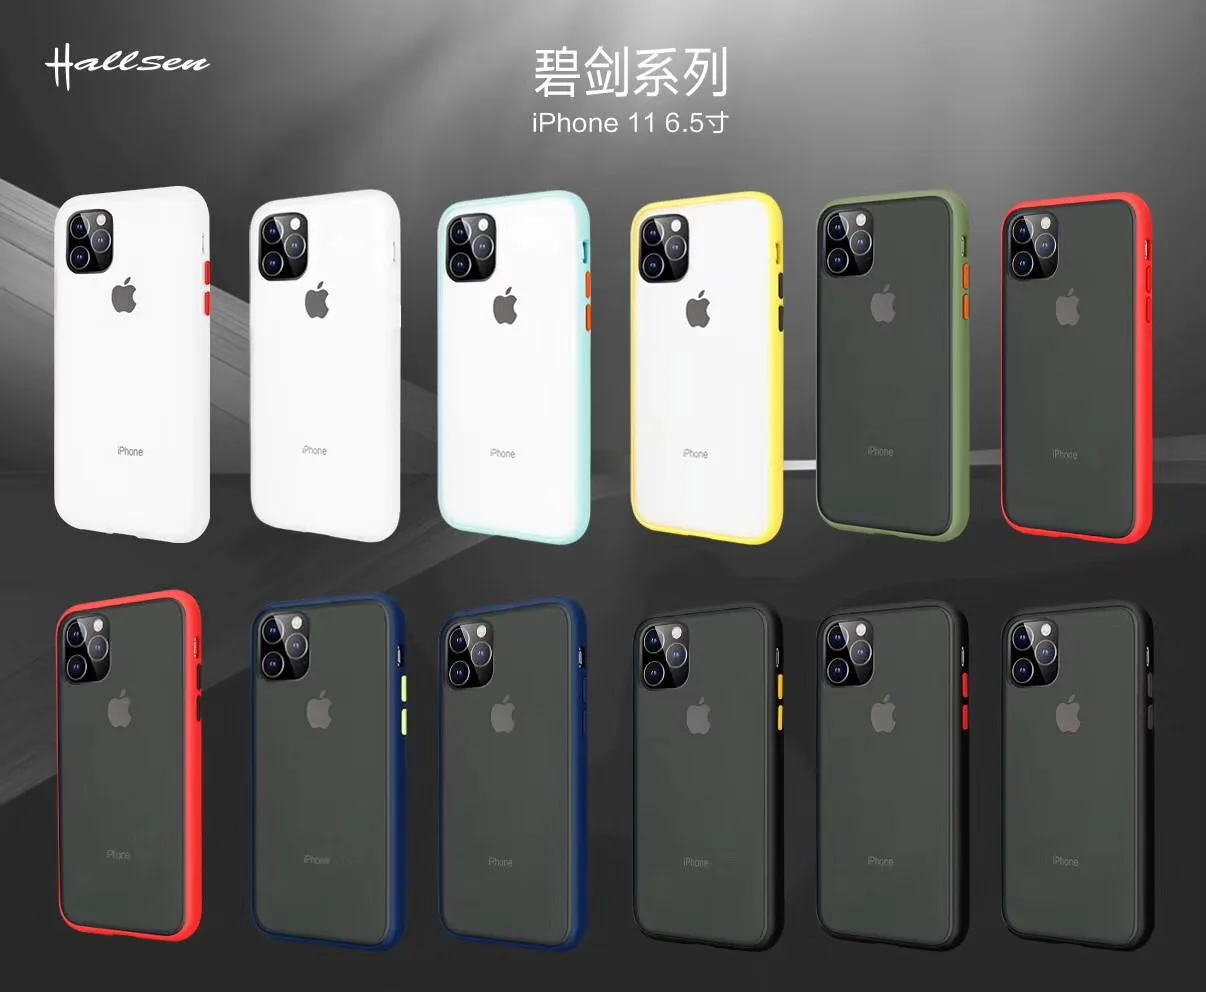 Nuevo 2019 caso celular 2 en 1 tpu pc armadura caso con botón colorido al por mayor del teléfono caso para iphone 11 pro max